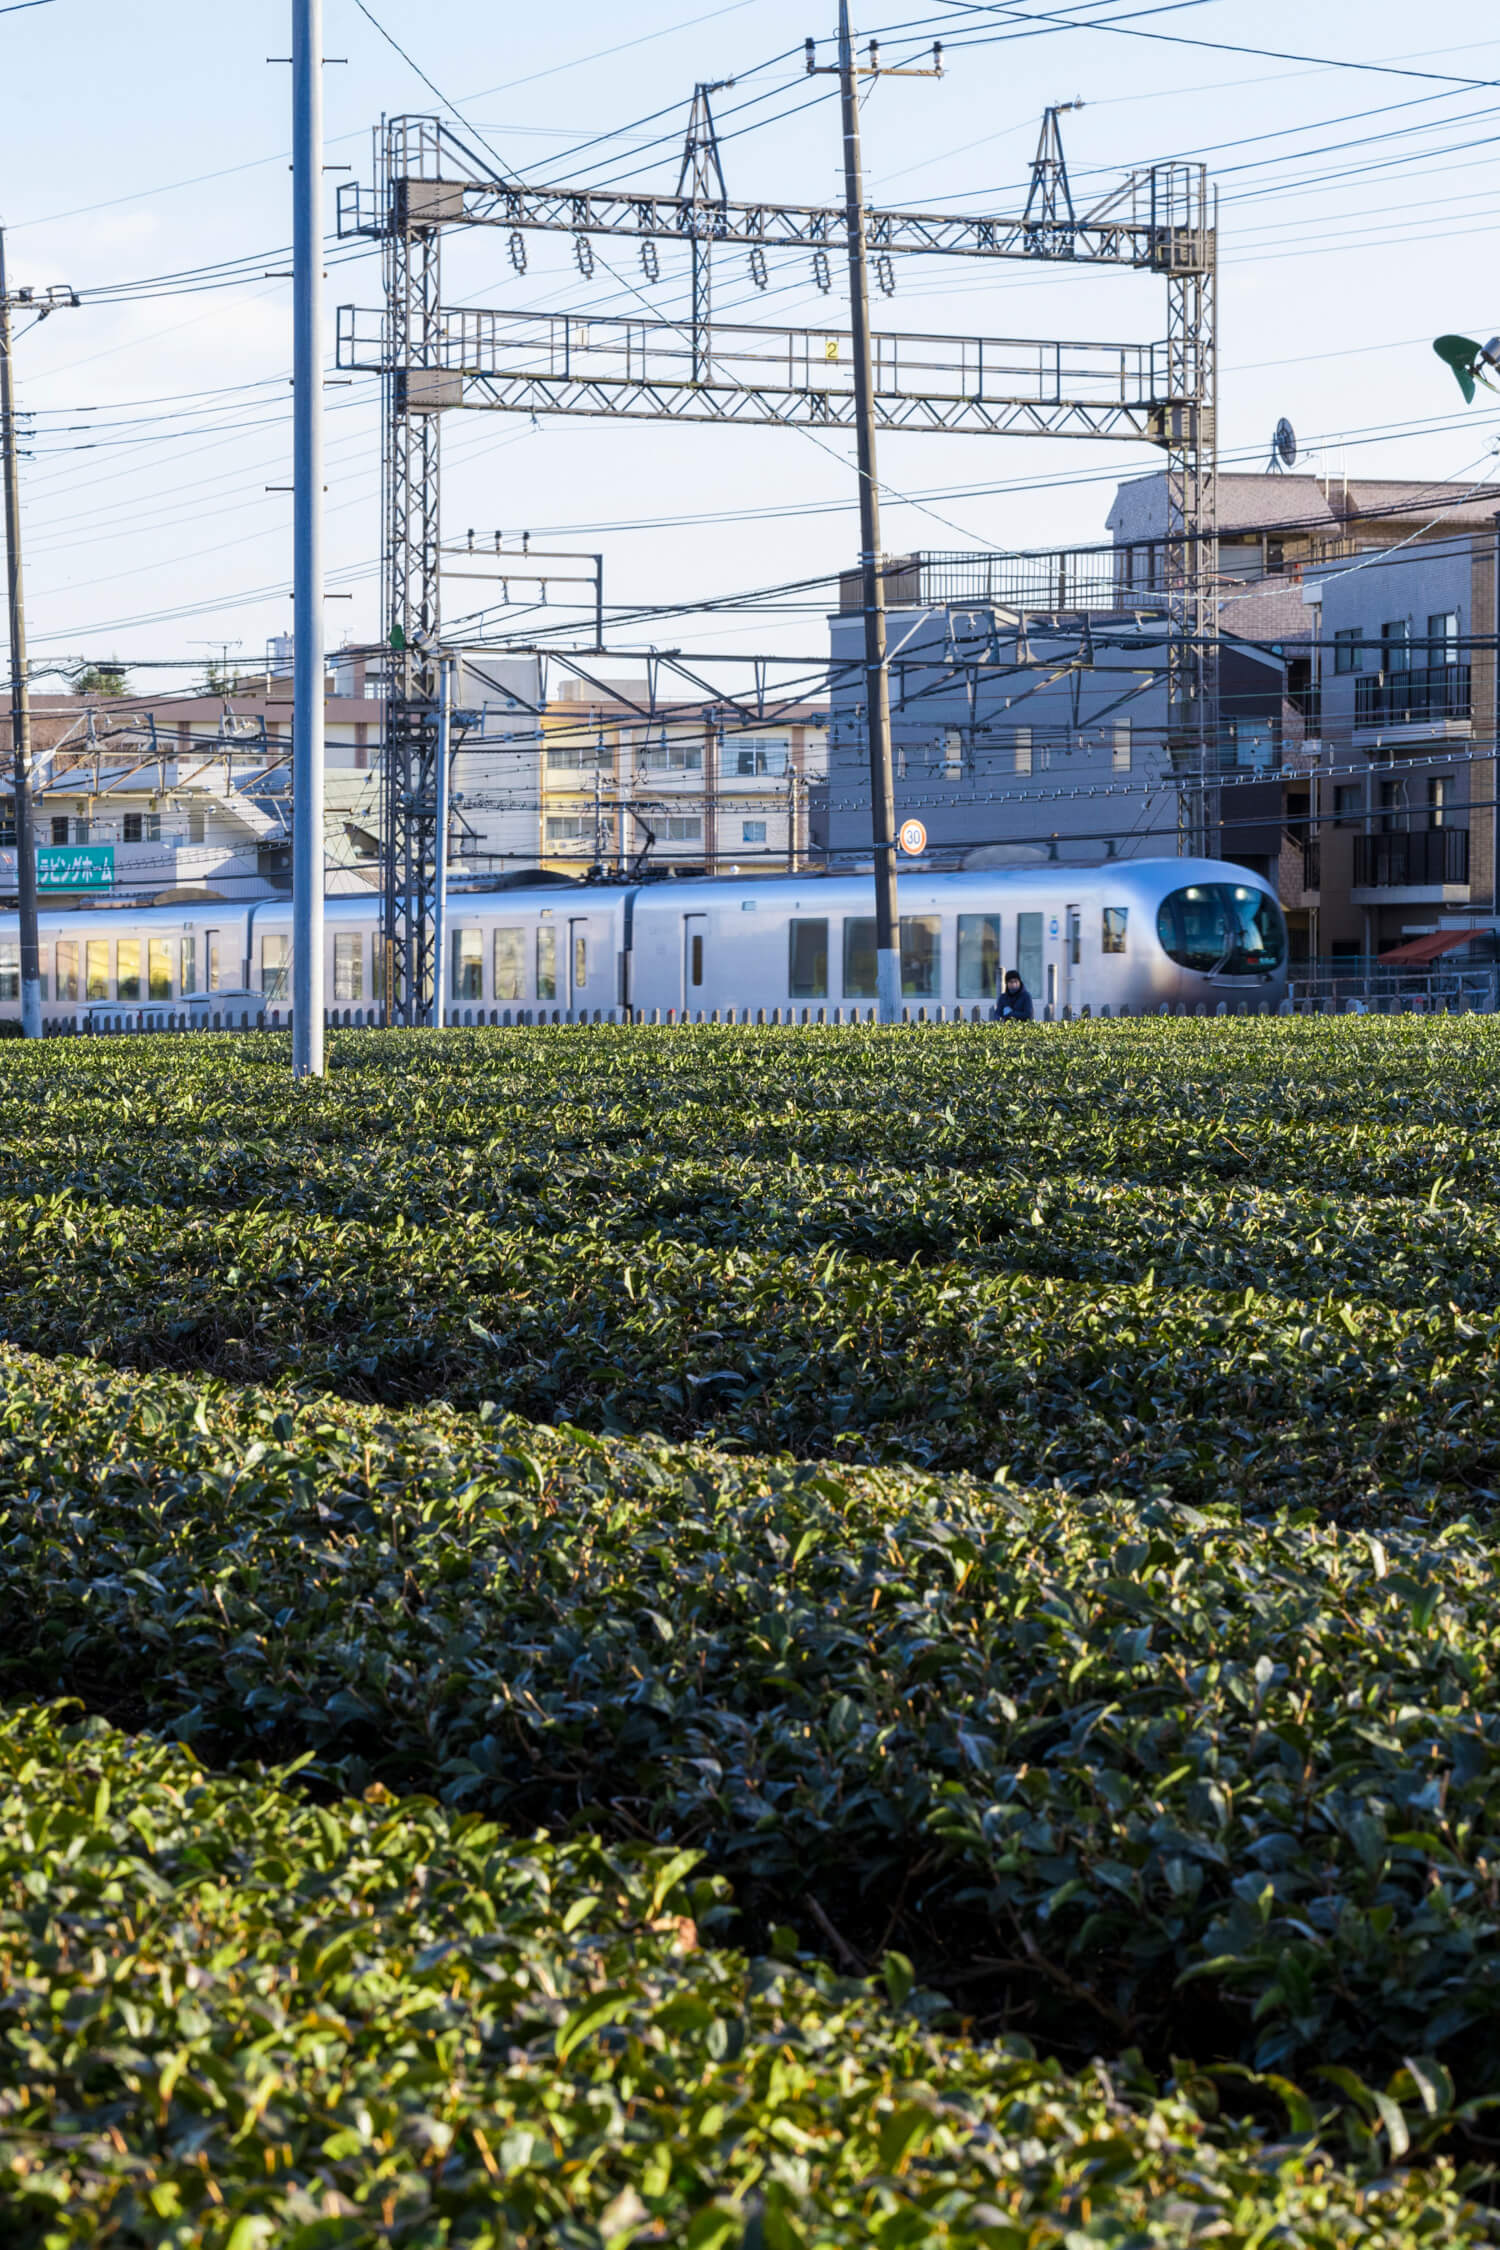 特急ラビューも走る西所沢駅そばの線路沿いにも広がる茶畑。暮らしの中にお茶がある。